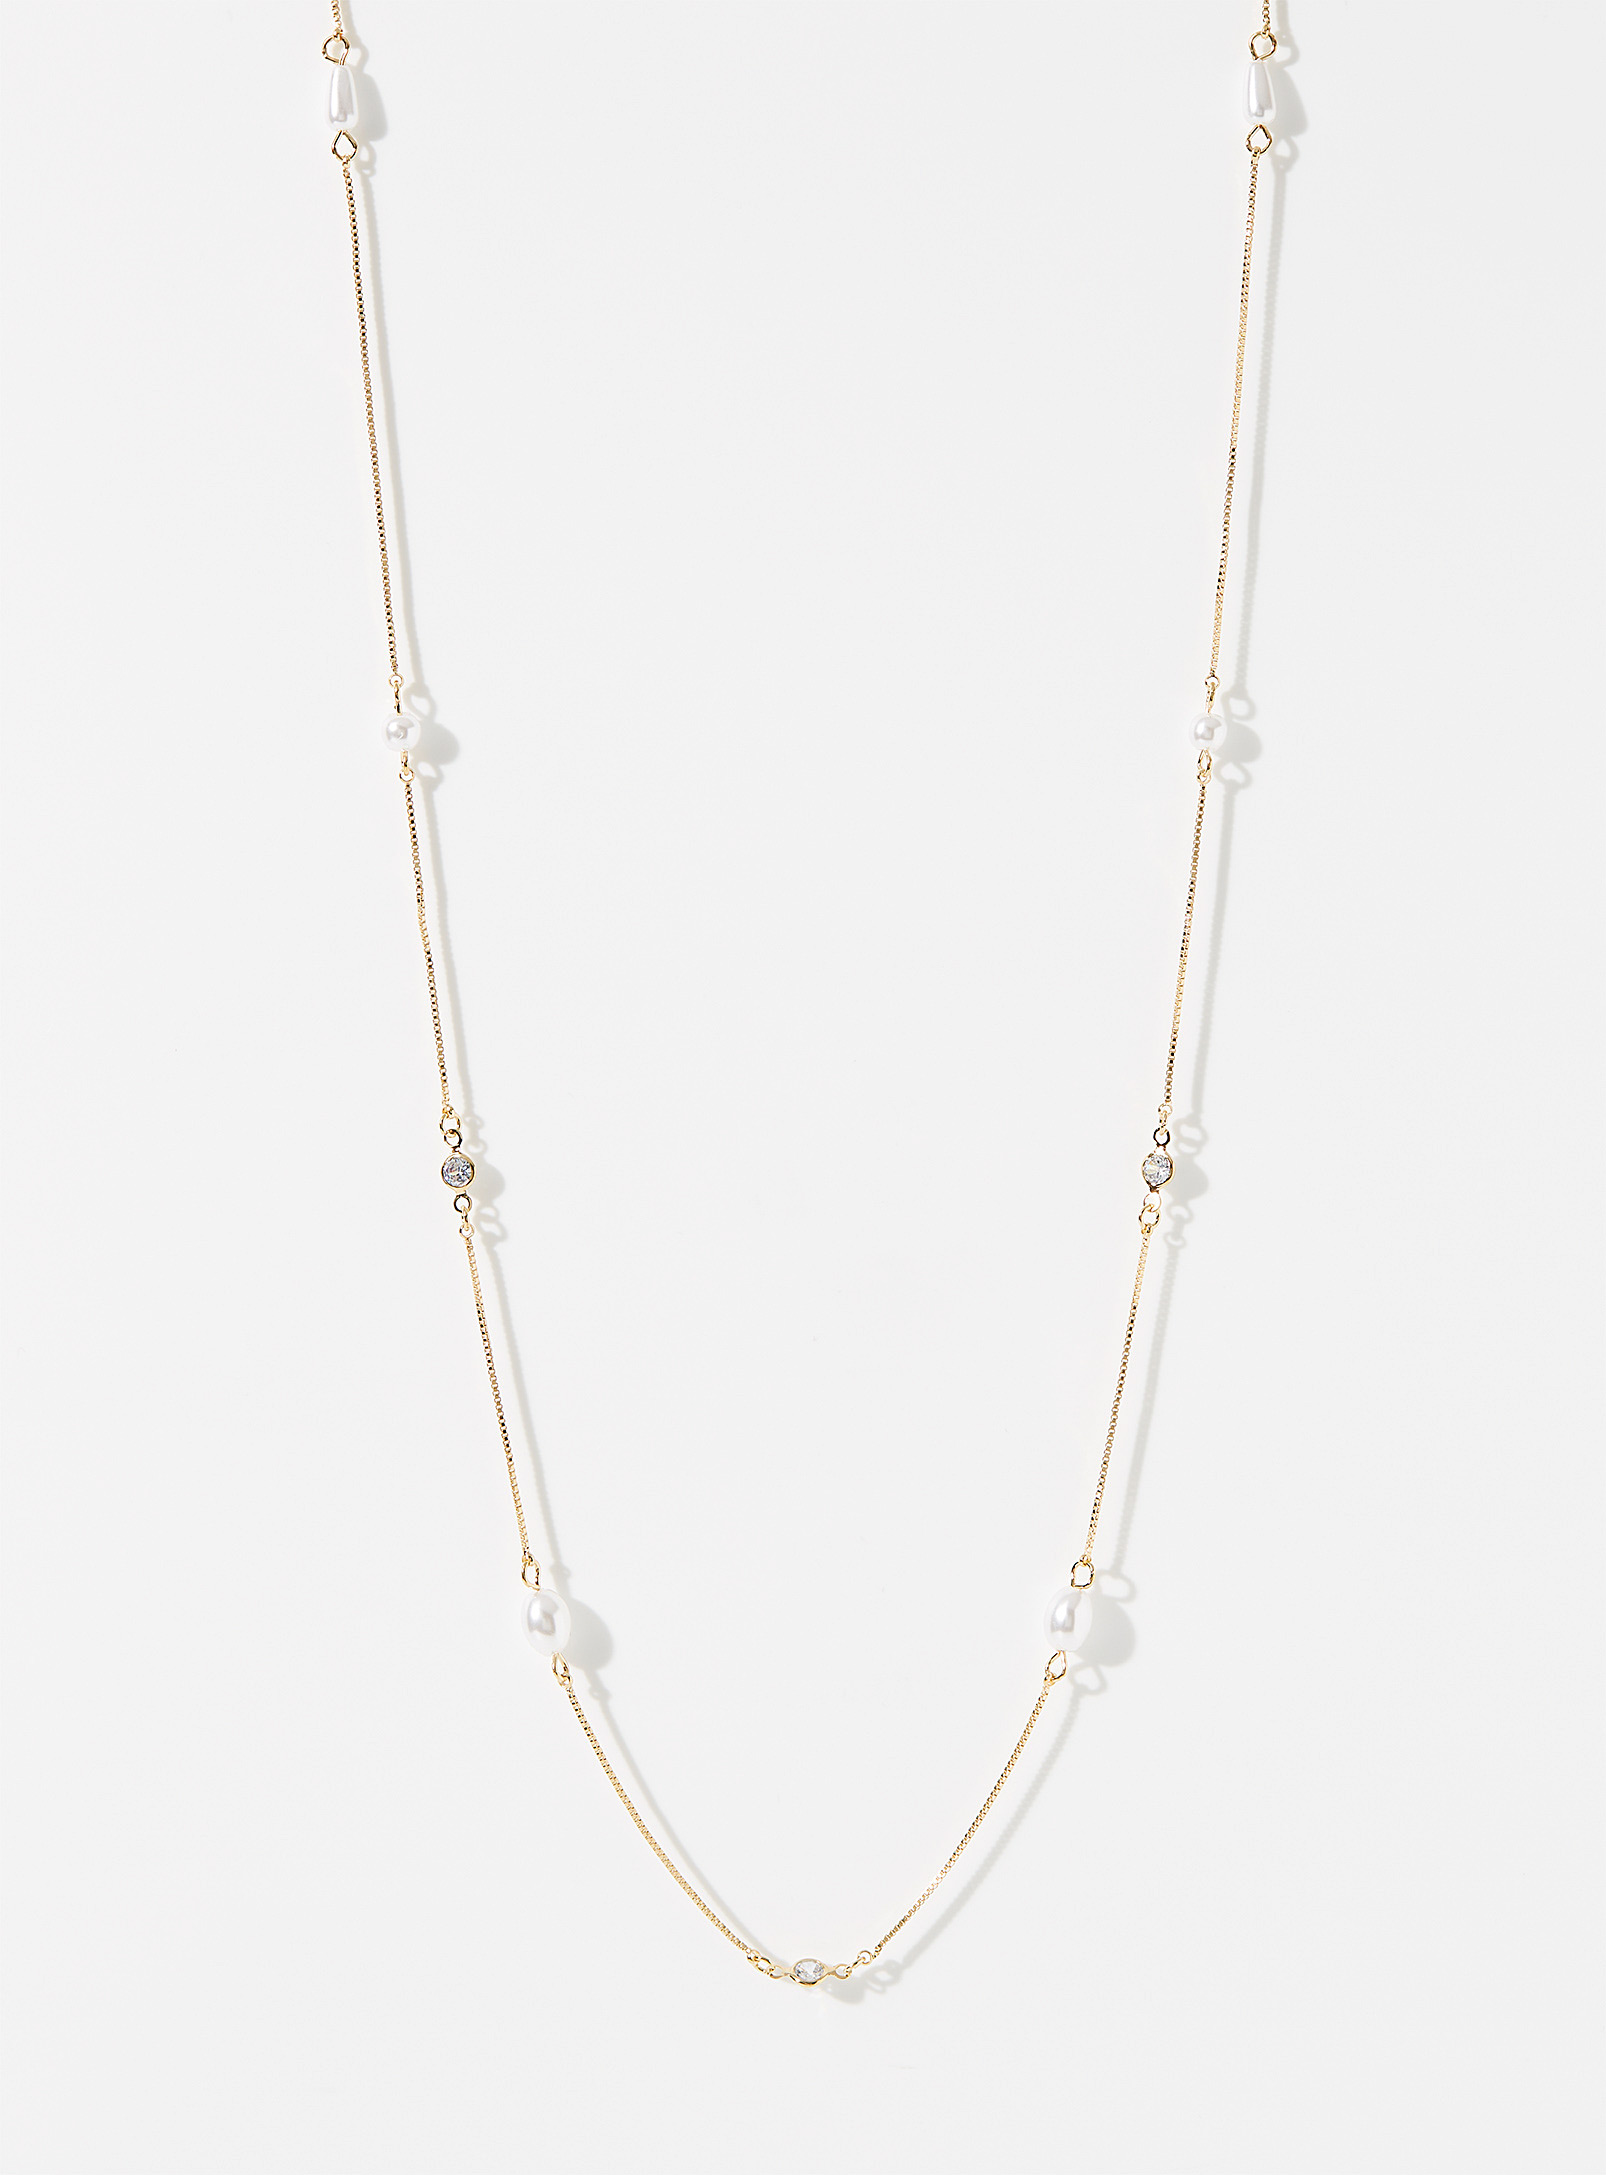 Simons - La longue chaîne perles et cristaux